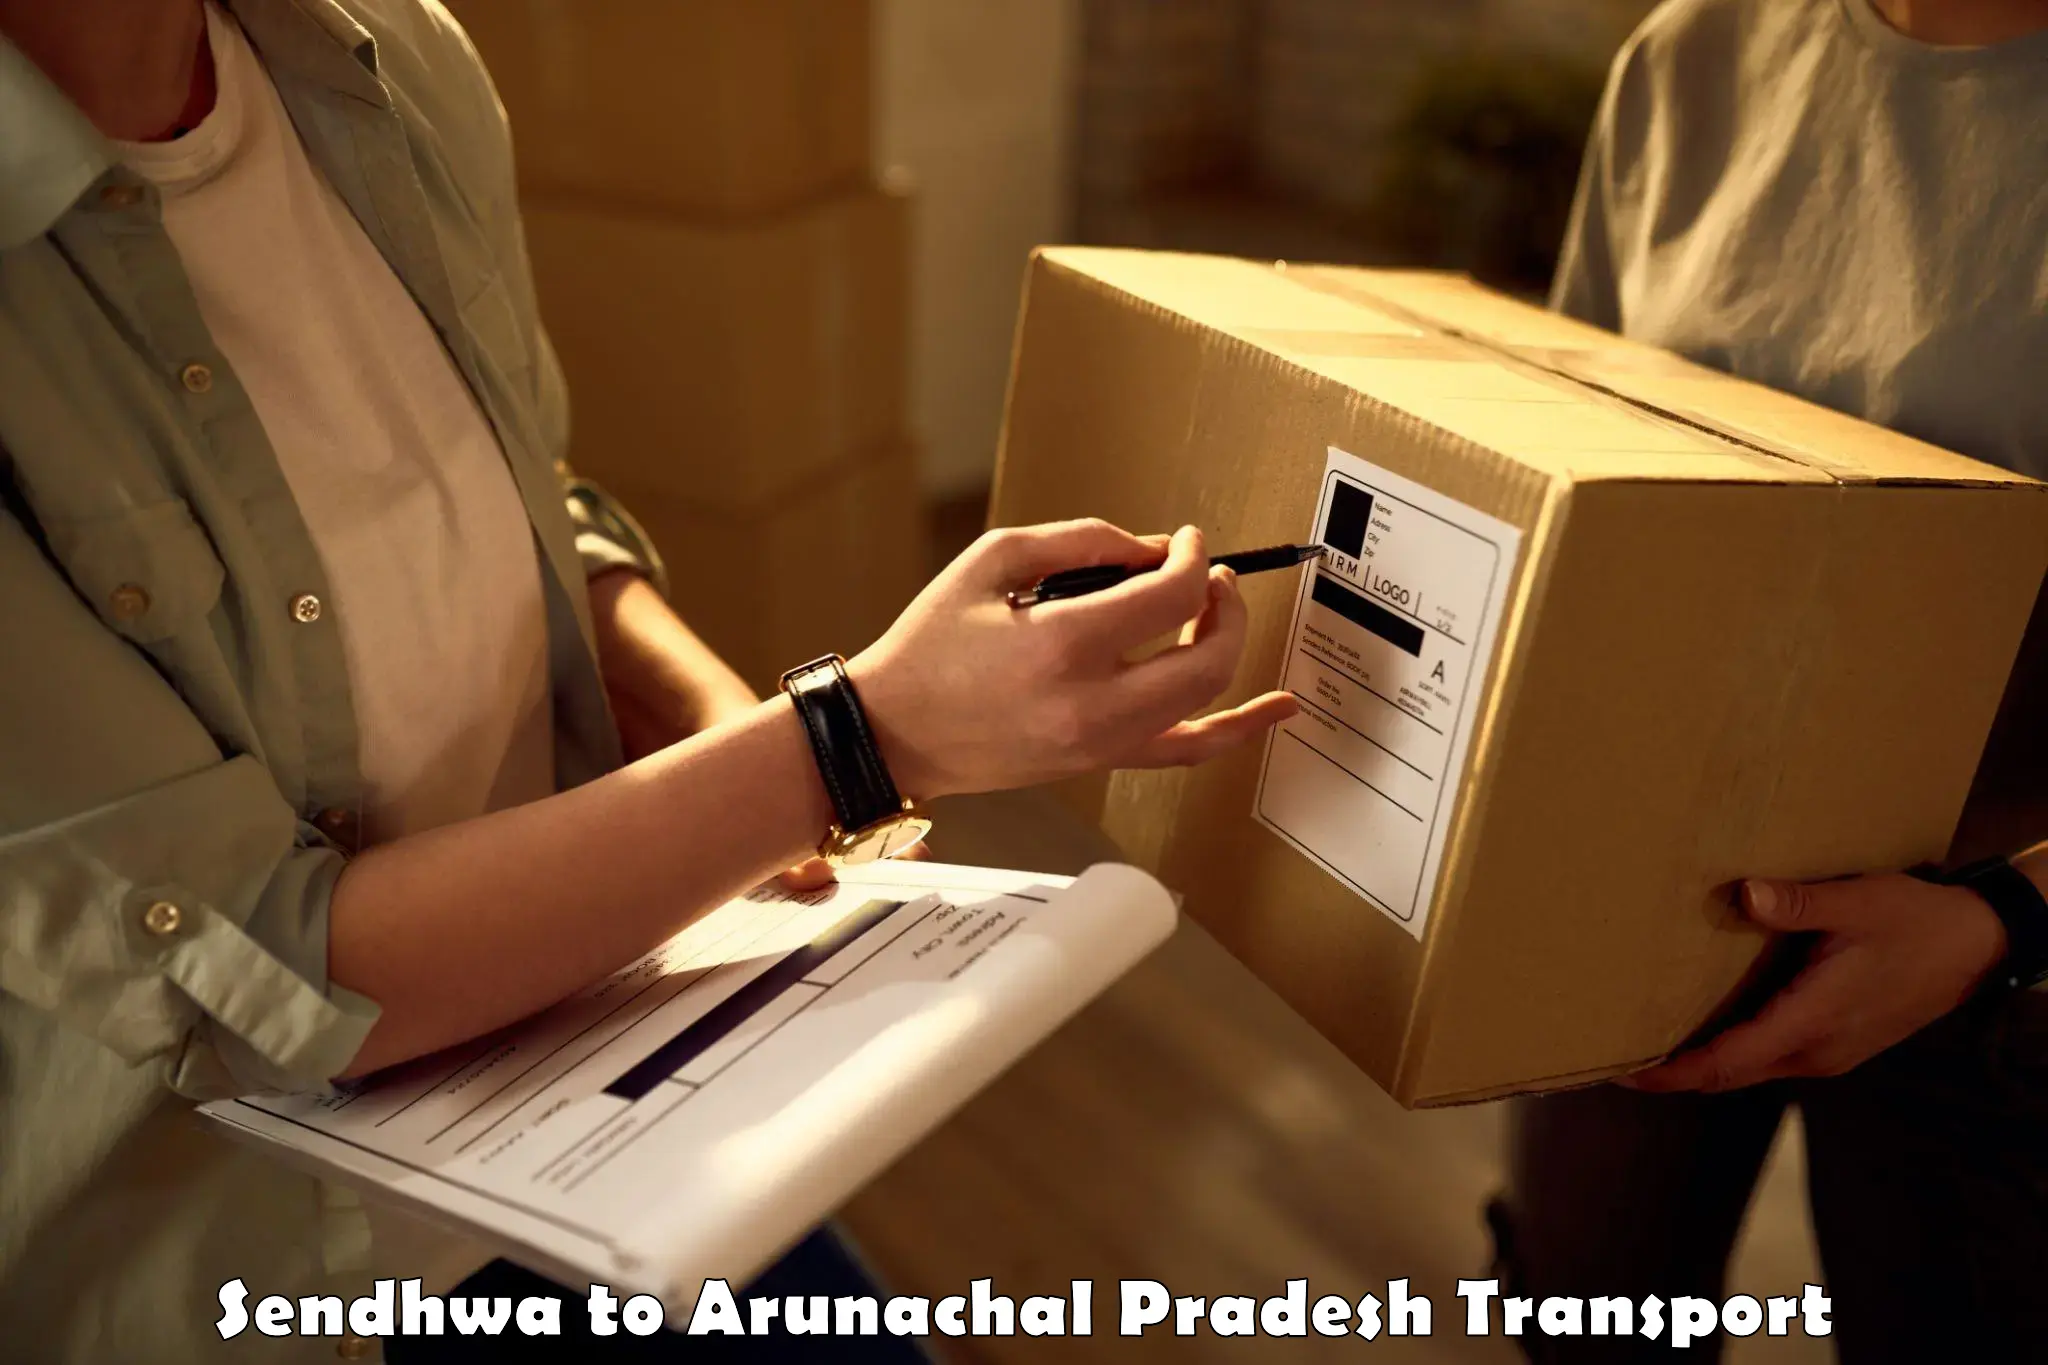 Two wheeler parcel service in Sendhwa to Lower Subansiri